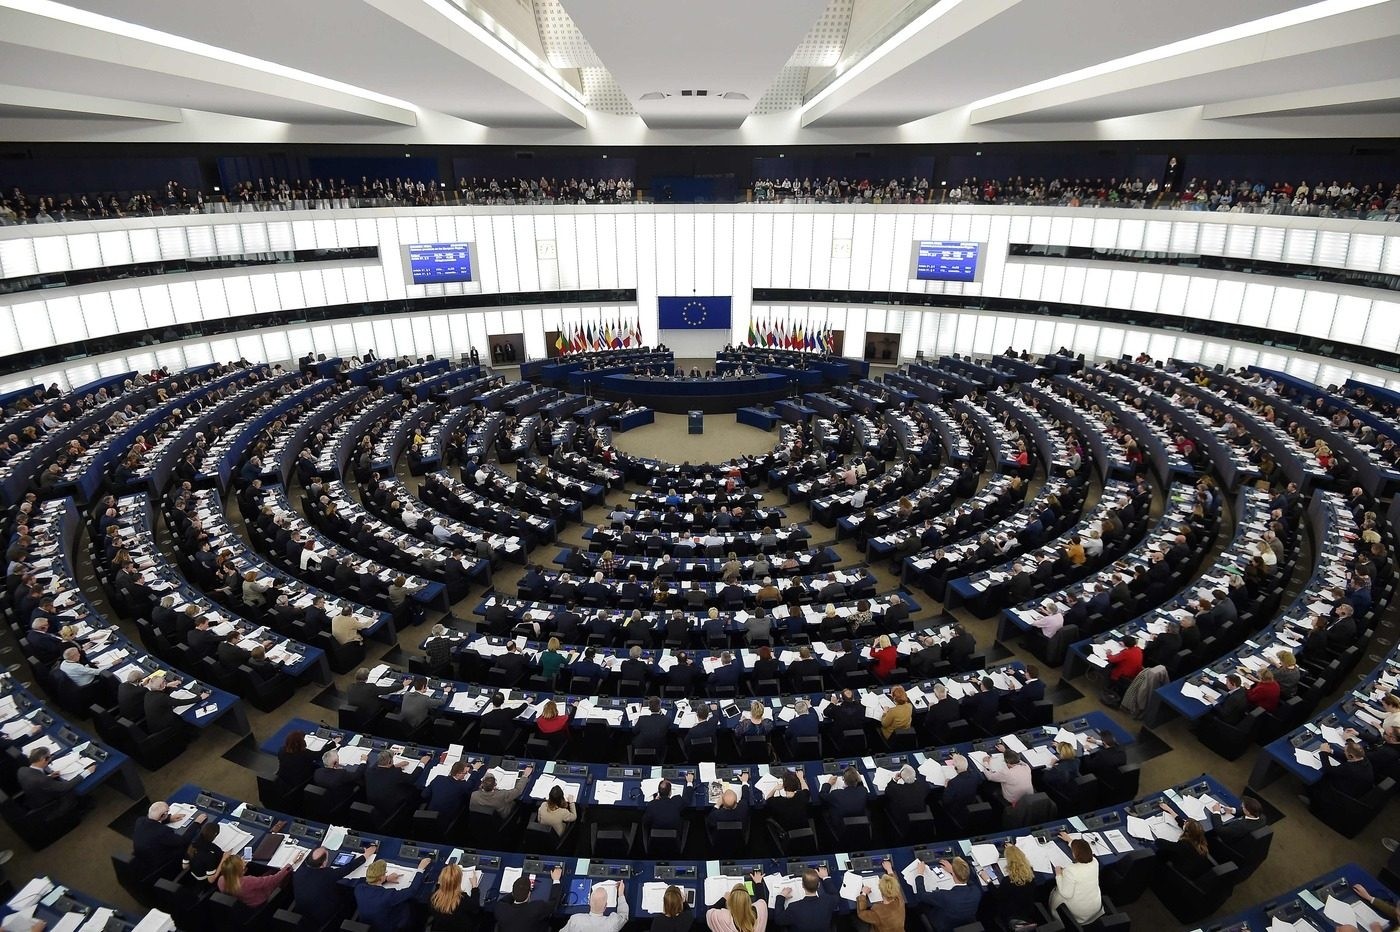 Approvata risoluzione Parlamento europeo: restrizioni da mantenere nell'alveo dello Stato di diritto - Terra Nuova